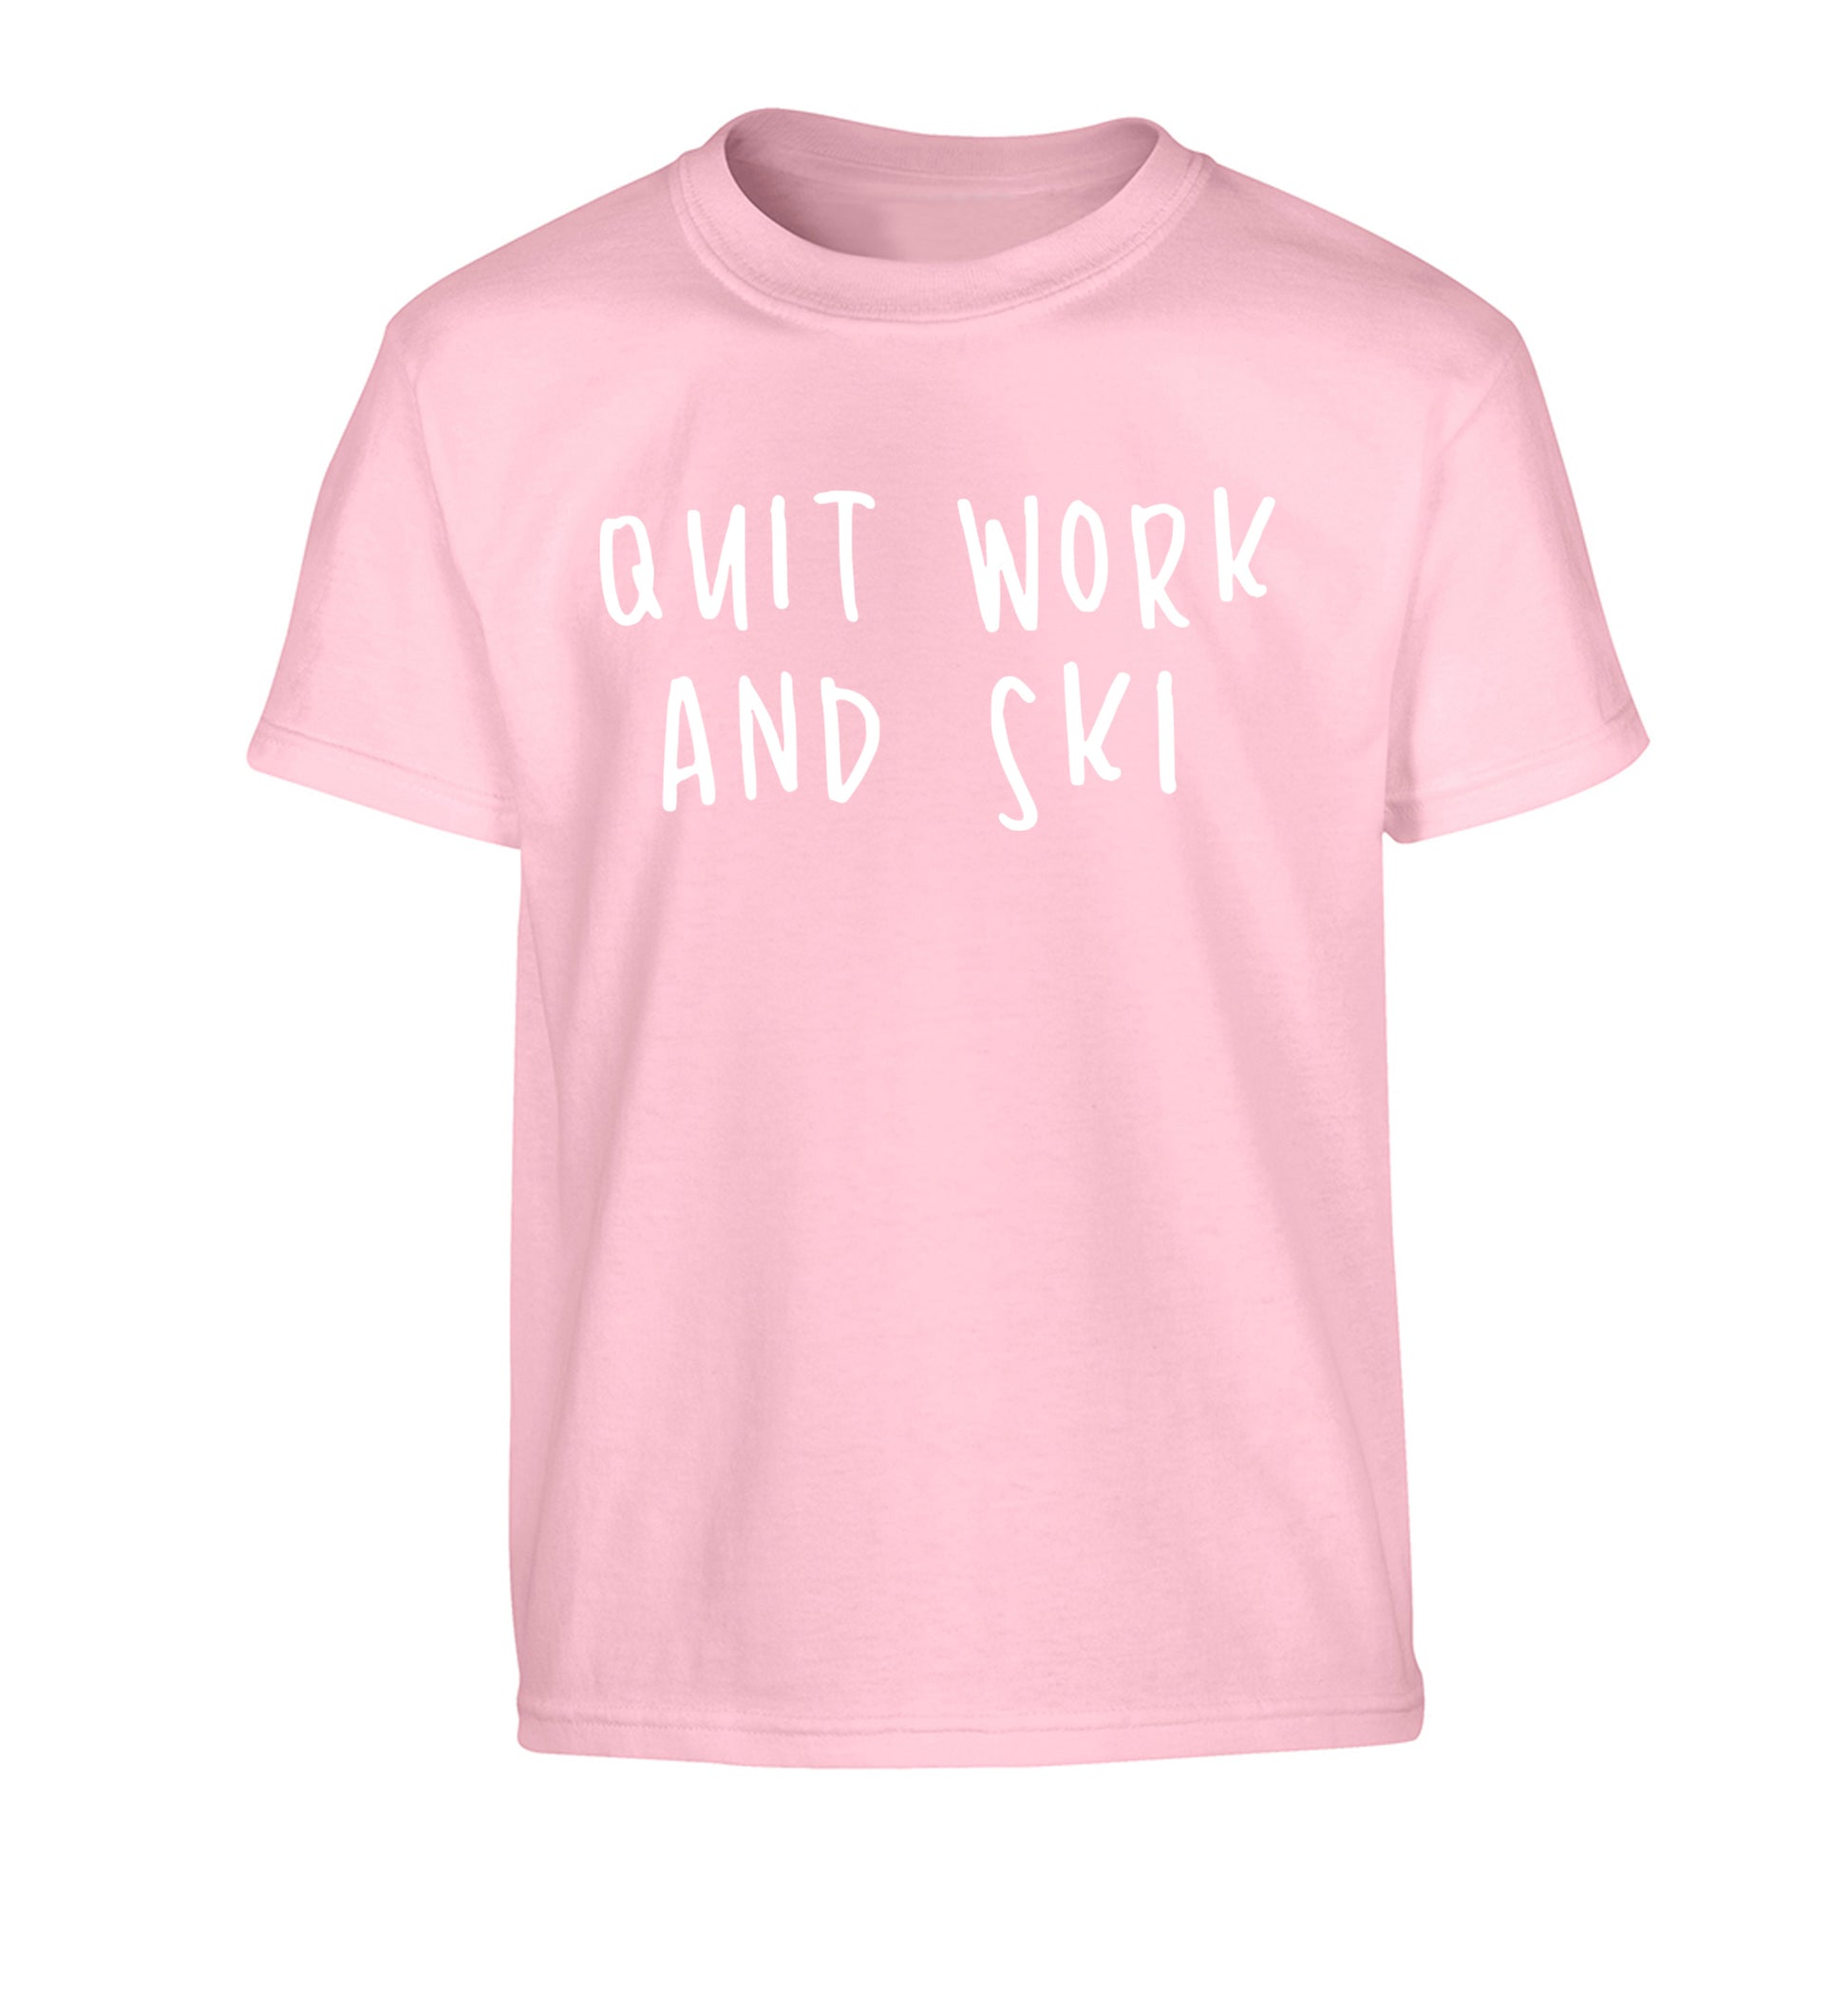 Quit work and ski Children's light pink Tshirt 12-14 Years